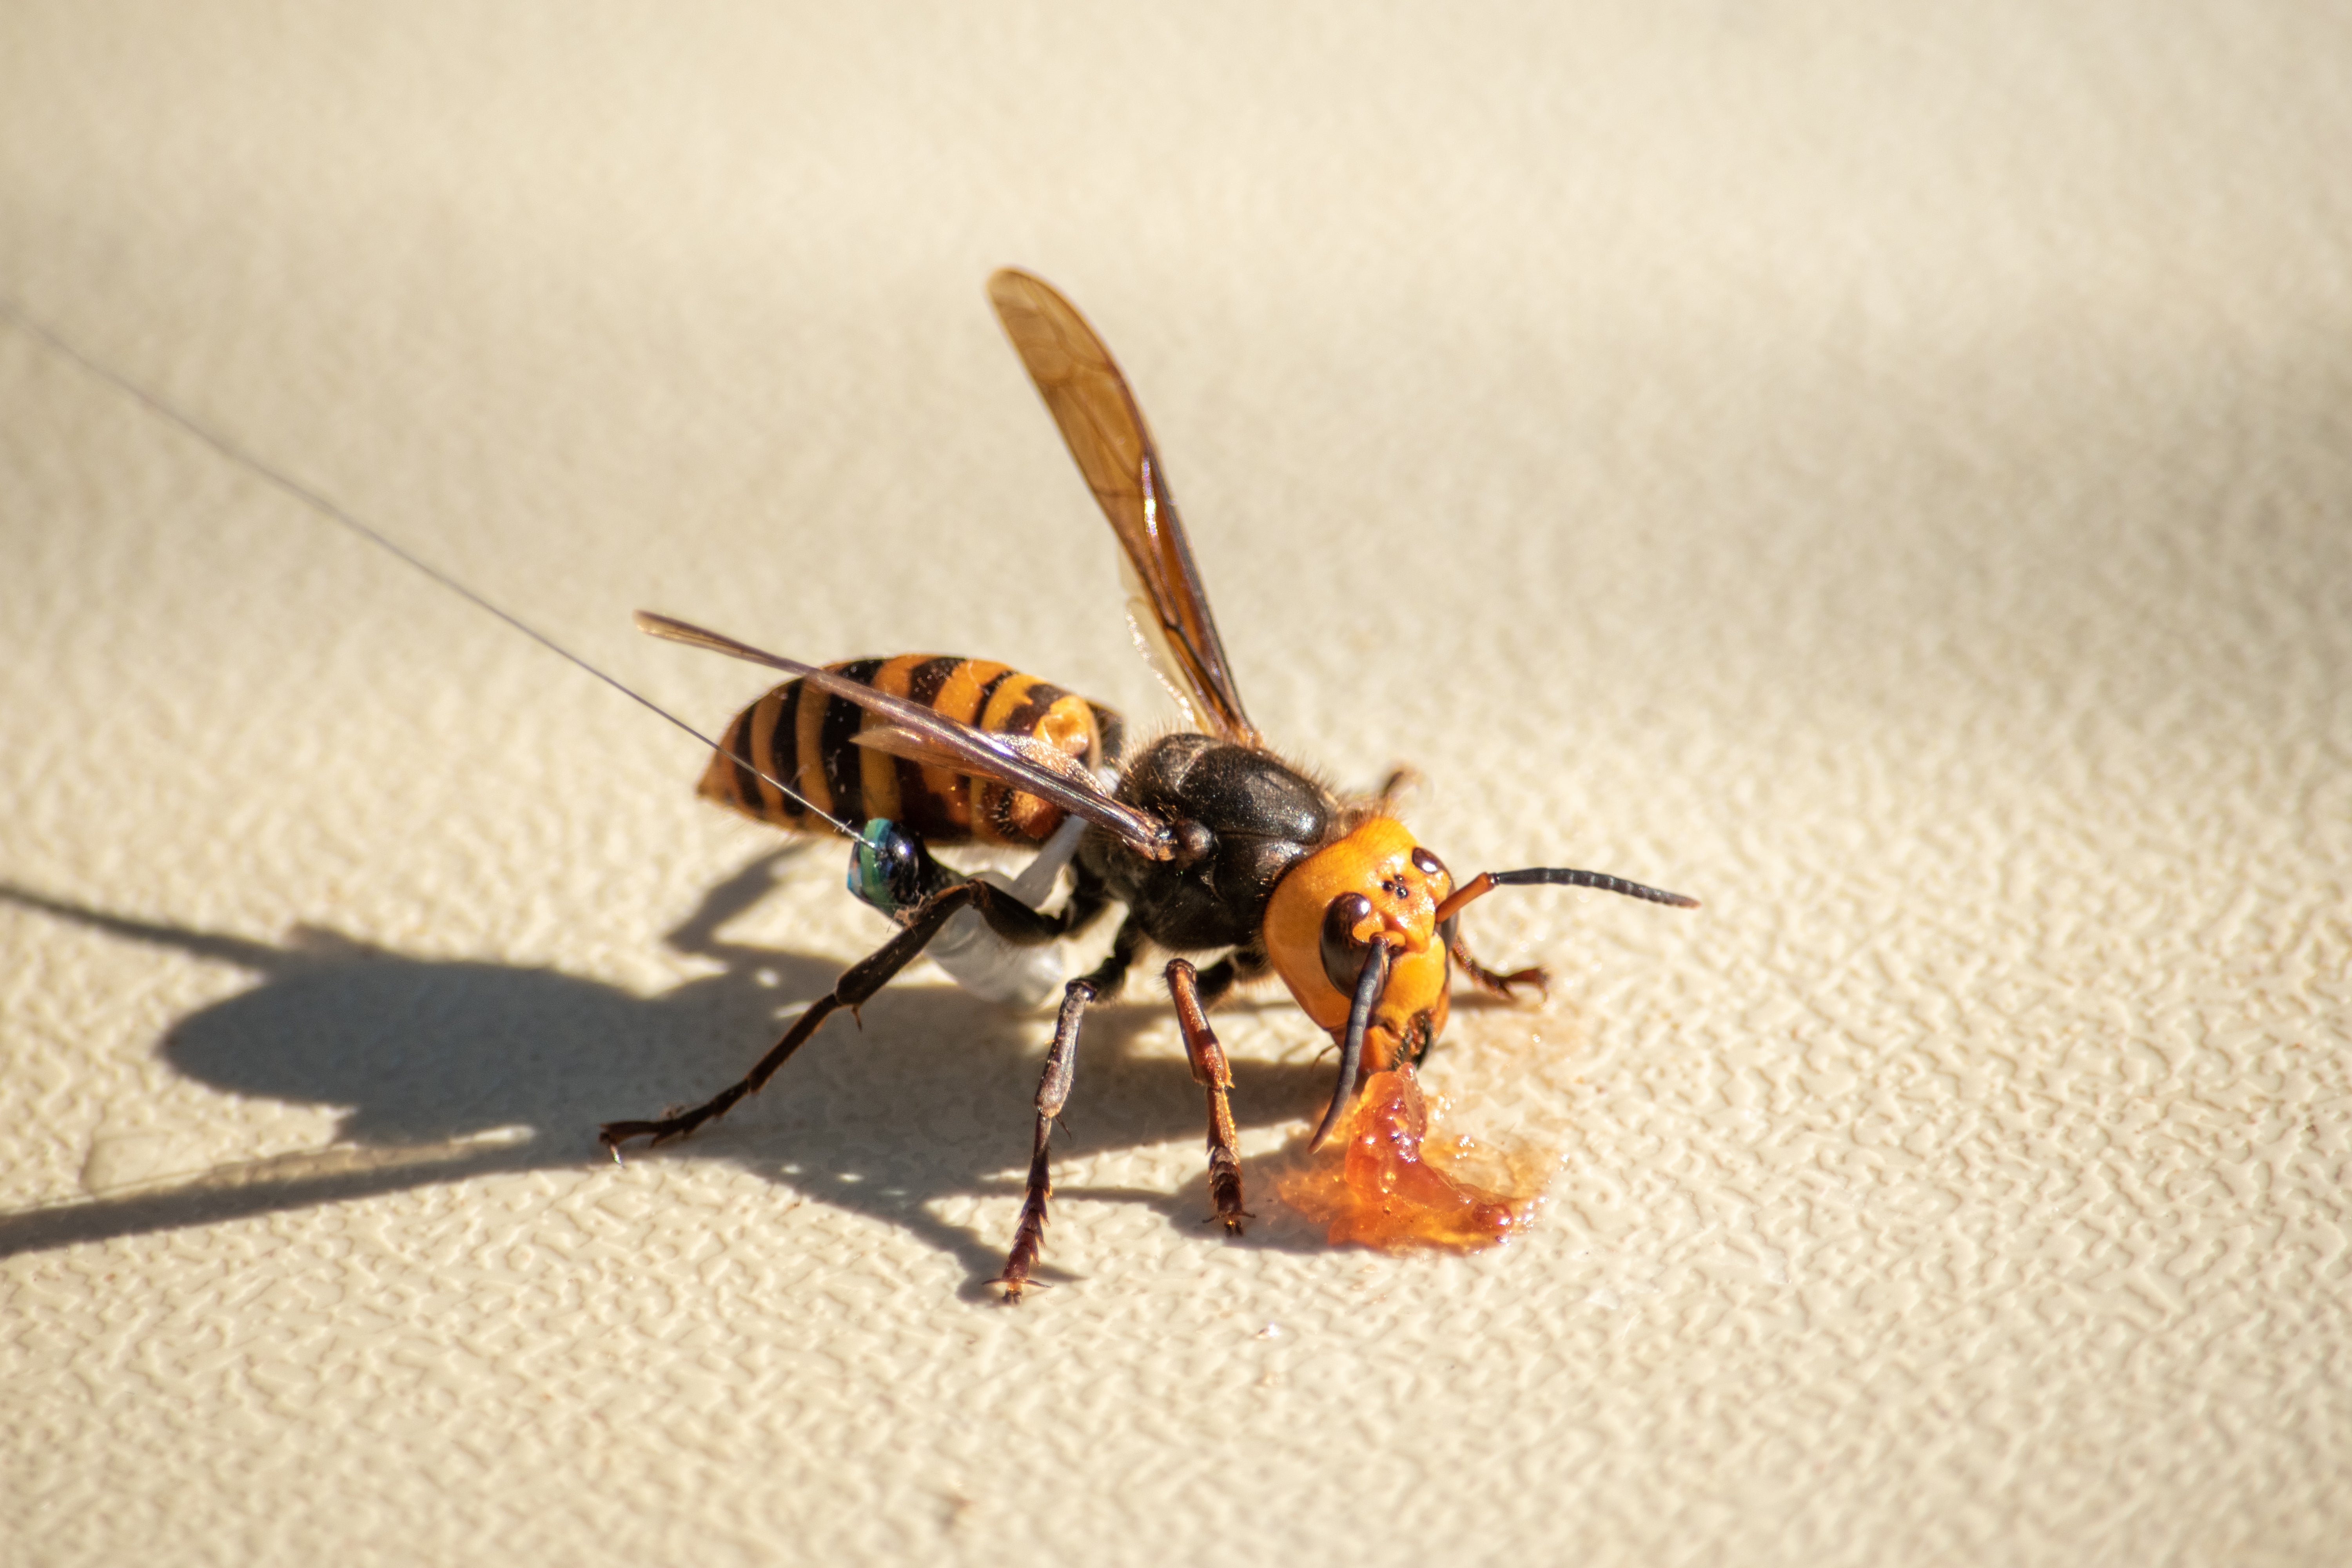 An Asian giant hornet wearing a tracker eats some jam.